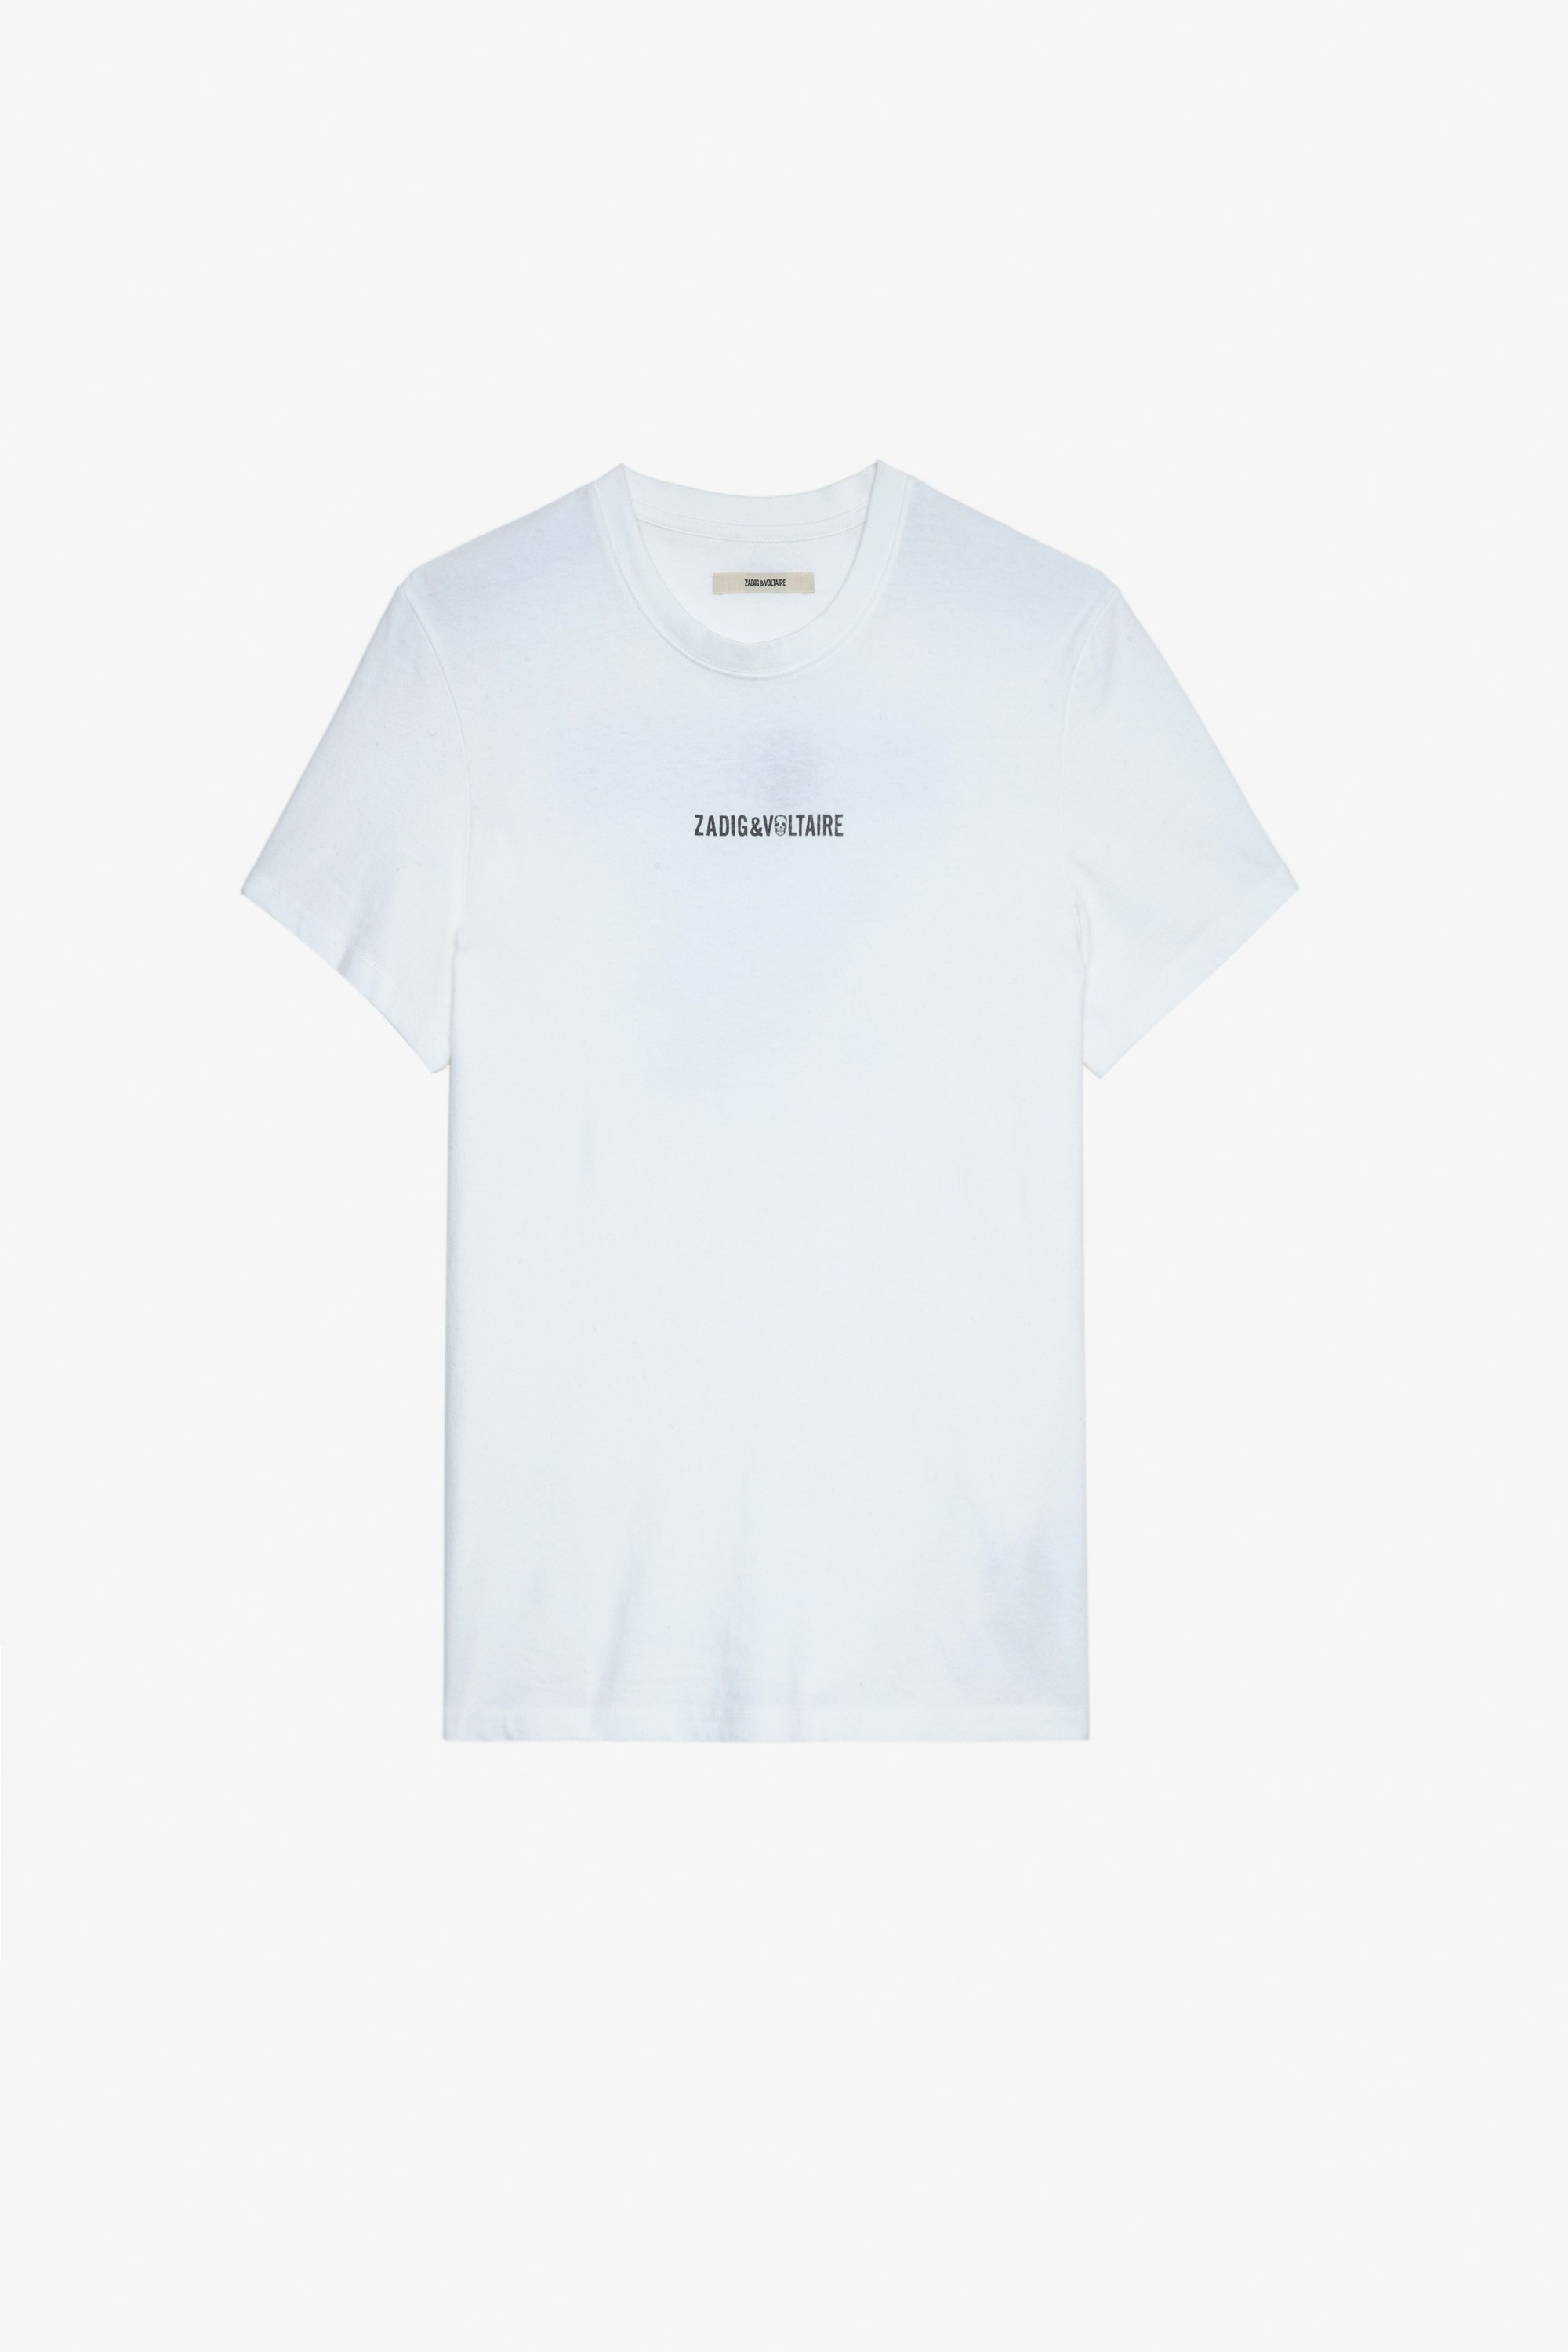 T-Shirt Ted Herren-T-Shirt aus ecrufarbener Baumwolle mit ZV-Signatur auf der Vorderseite und „Hédoniste“-Schriftzug auf der Rückseite